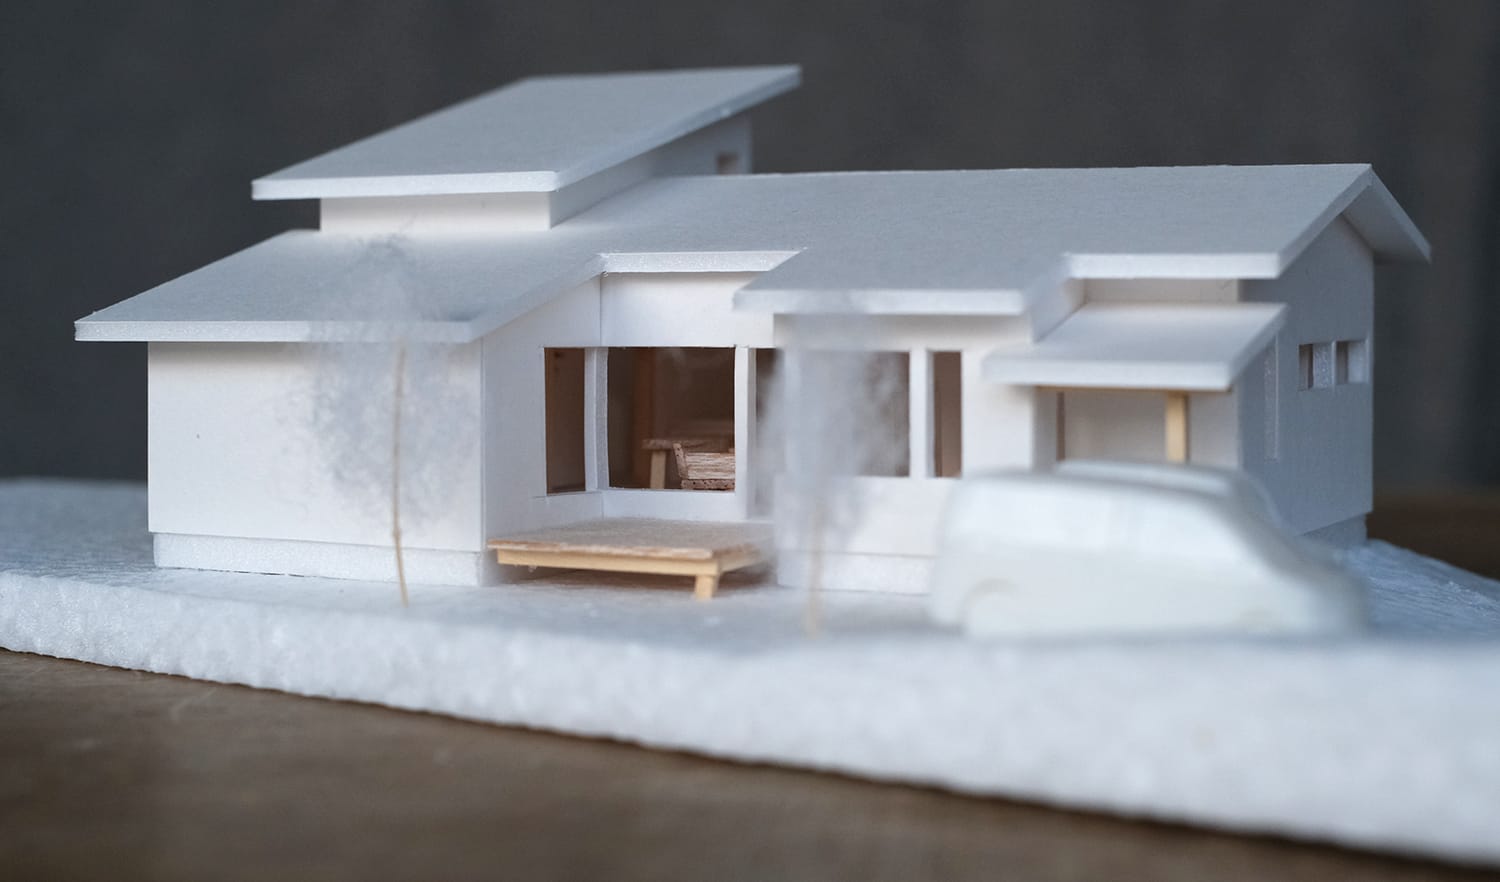 平屋の住宅模型の素材はスチレンボードと発泡スチロールと木材